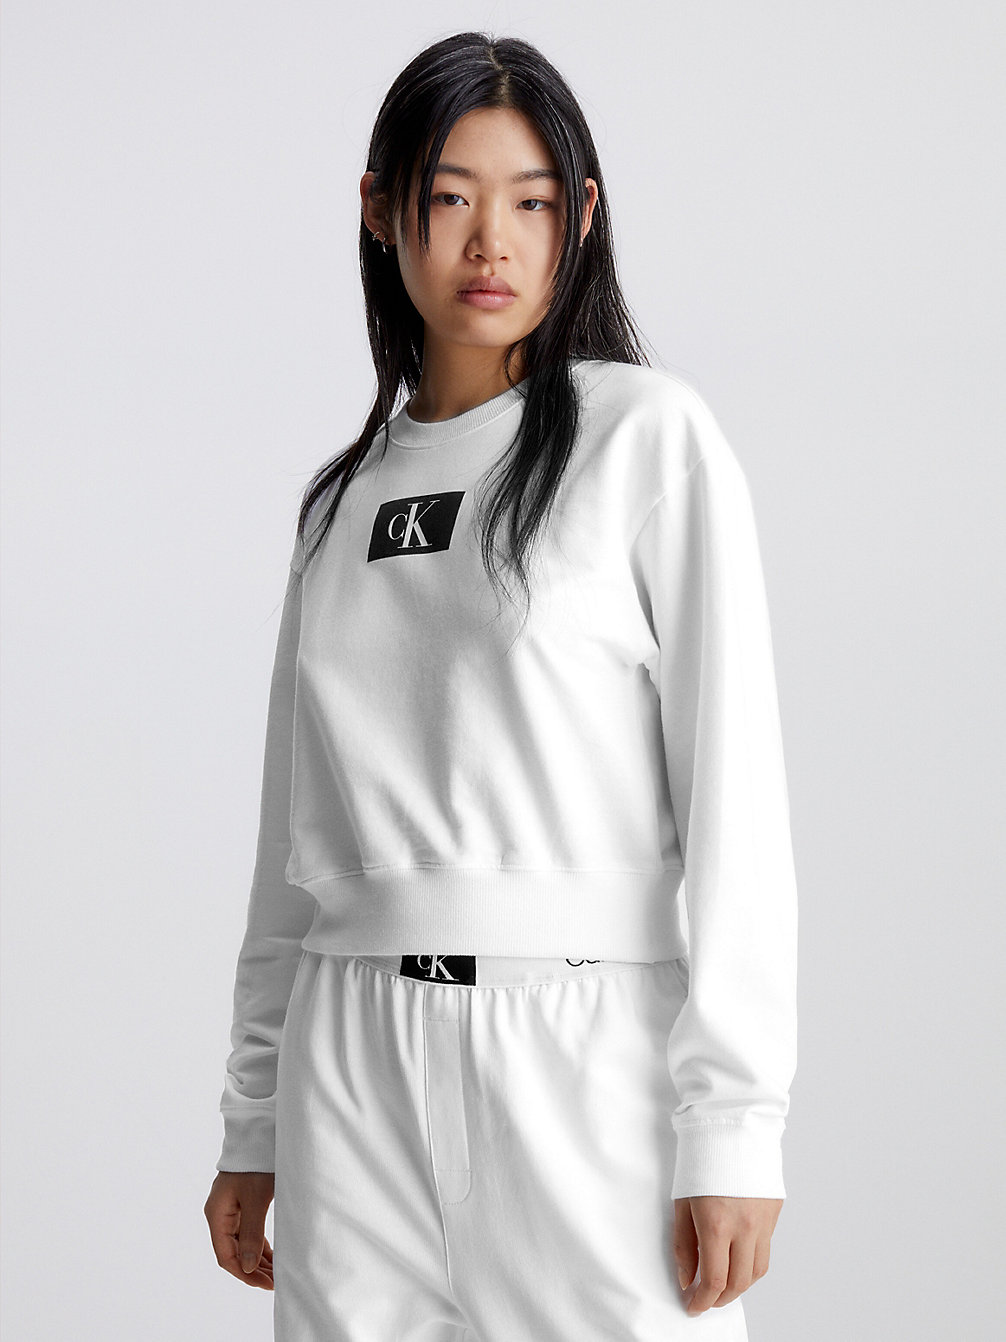 WHITE > Lounge Sweatshirt - Ck96 > undefined dames - Calvin Klein